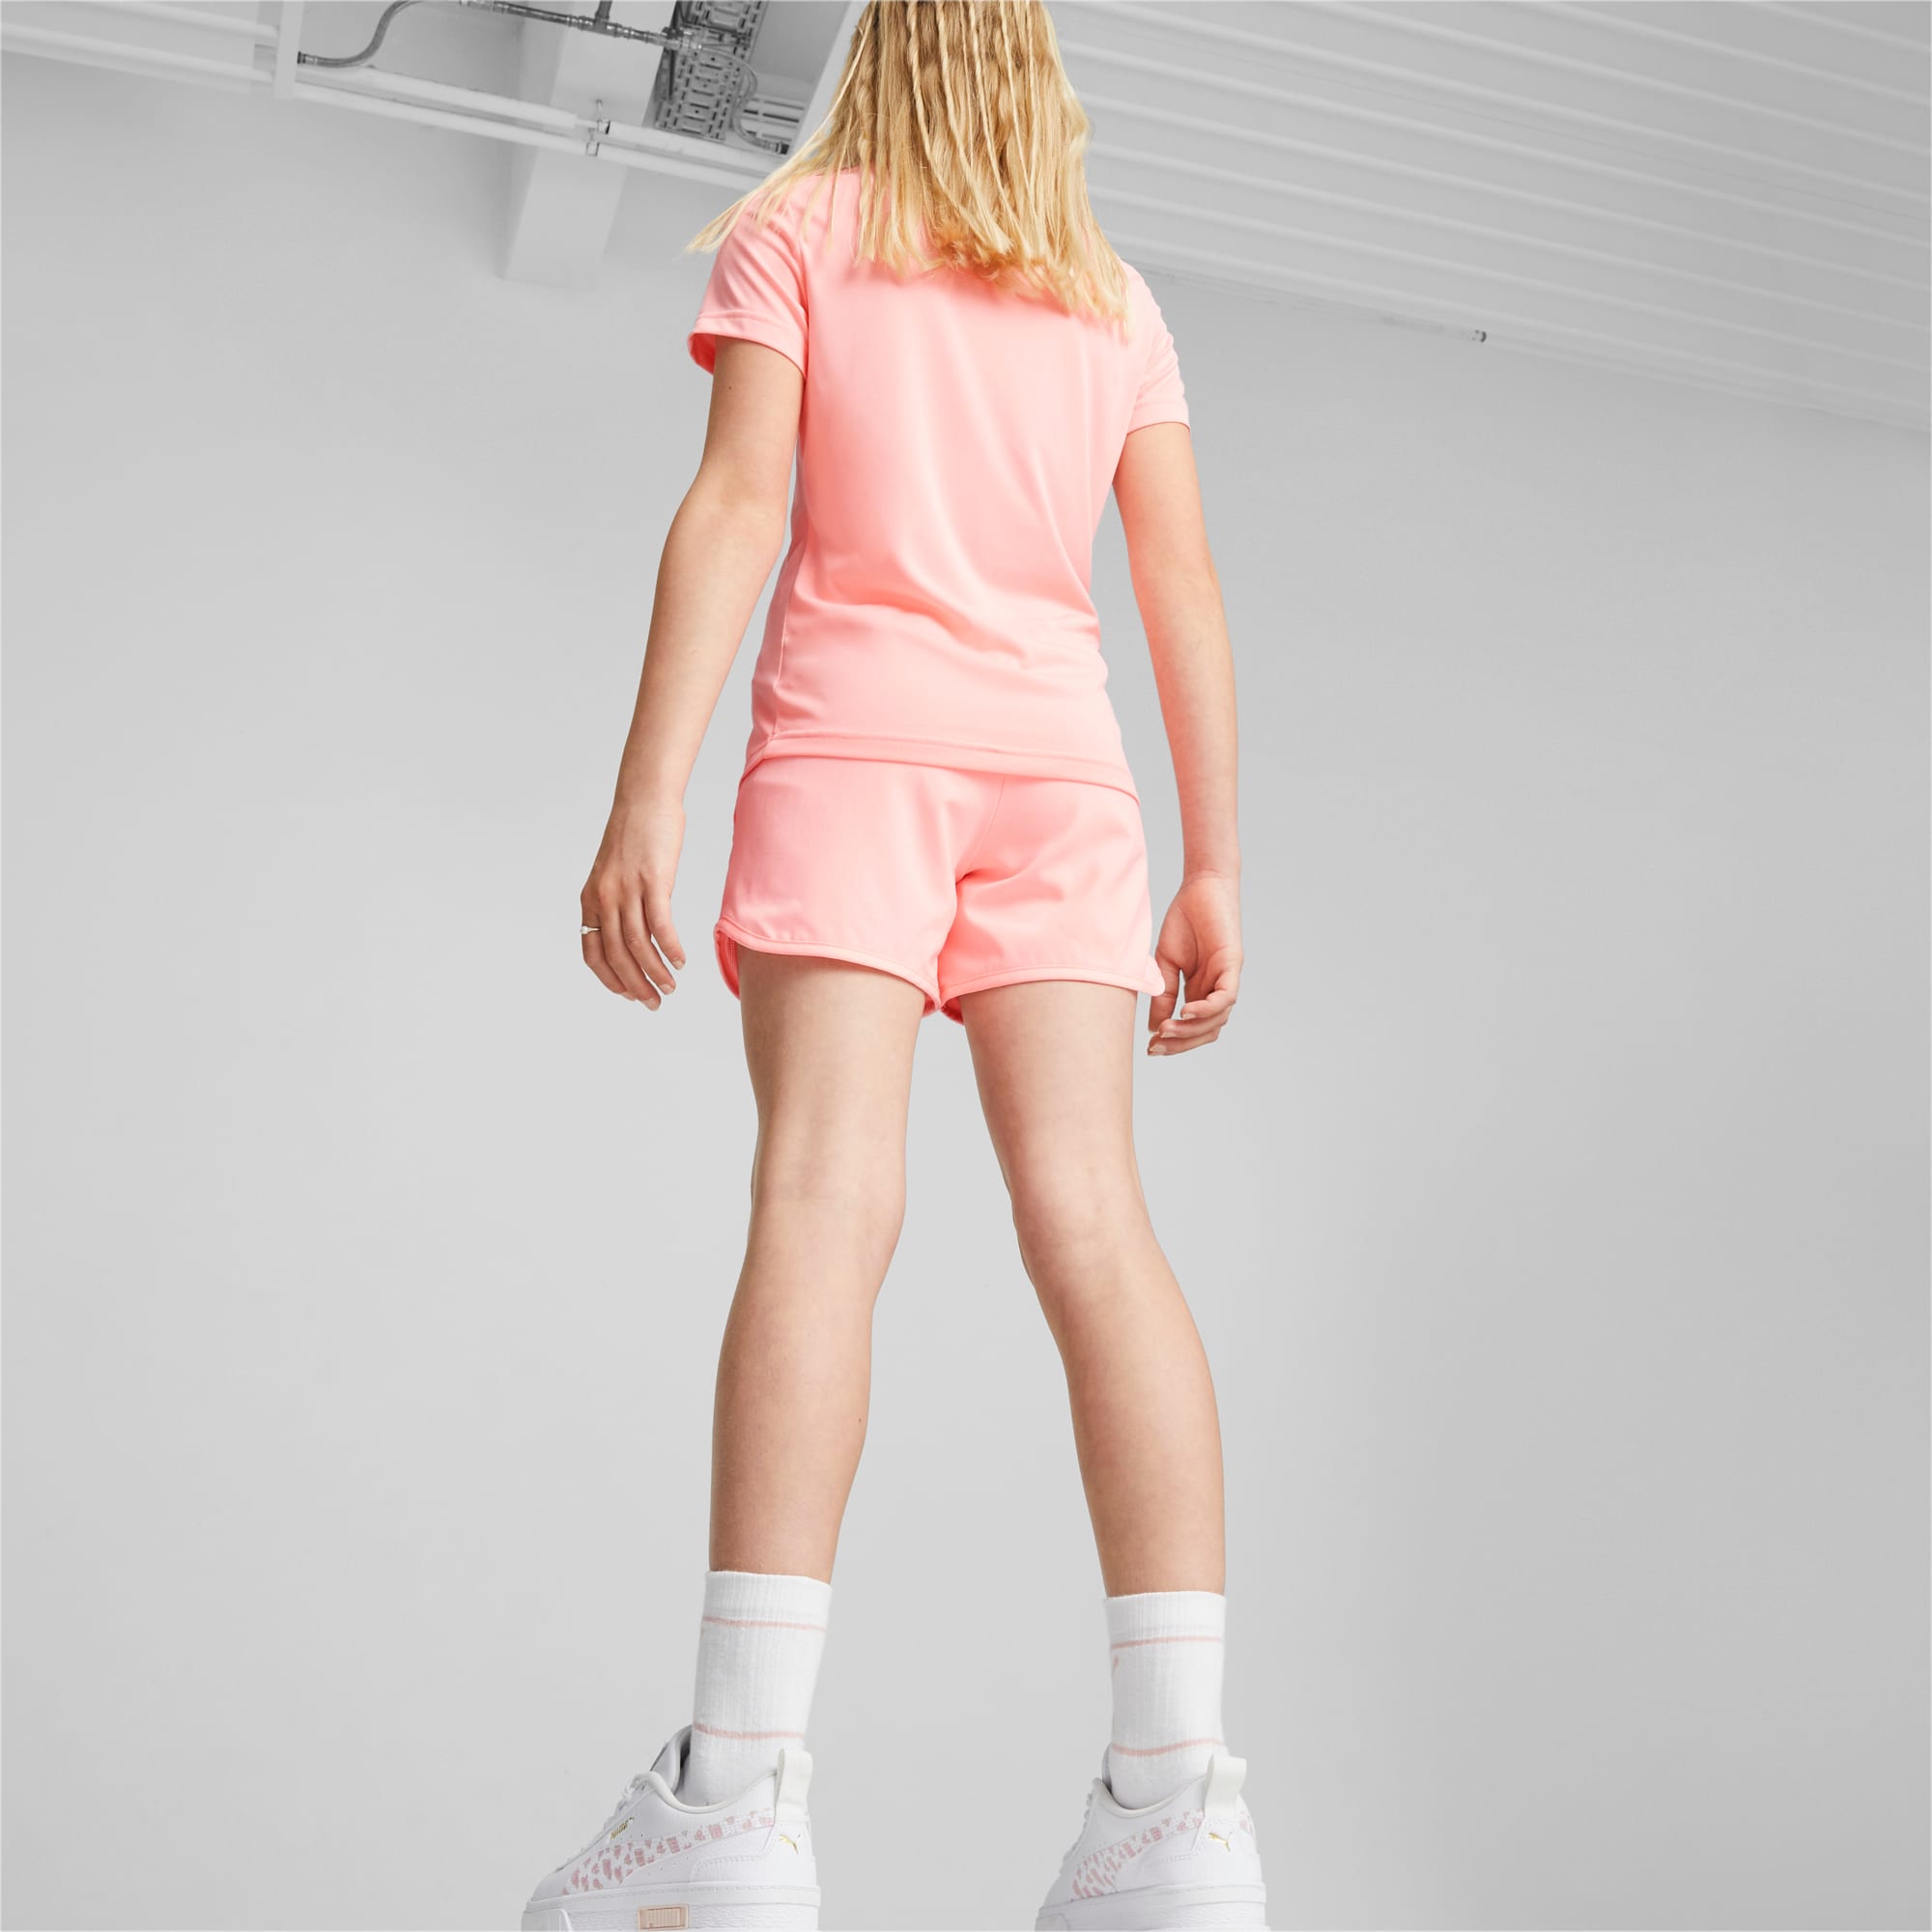 PUMA Active Youth Shorts, Koral Ice, Size 92, Clothing